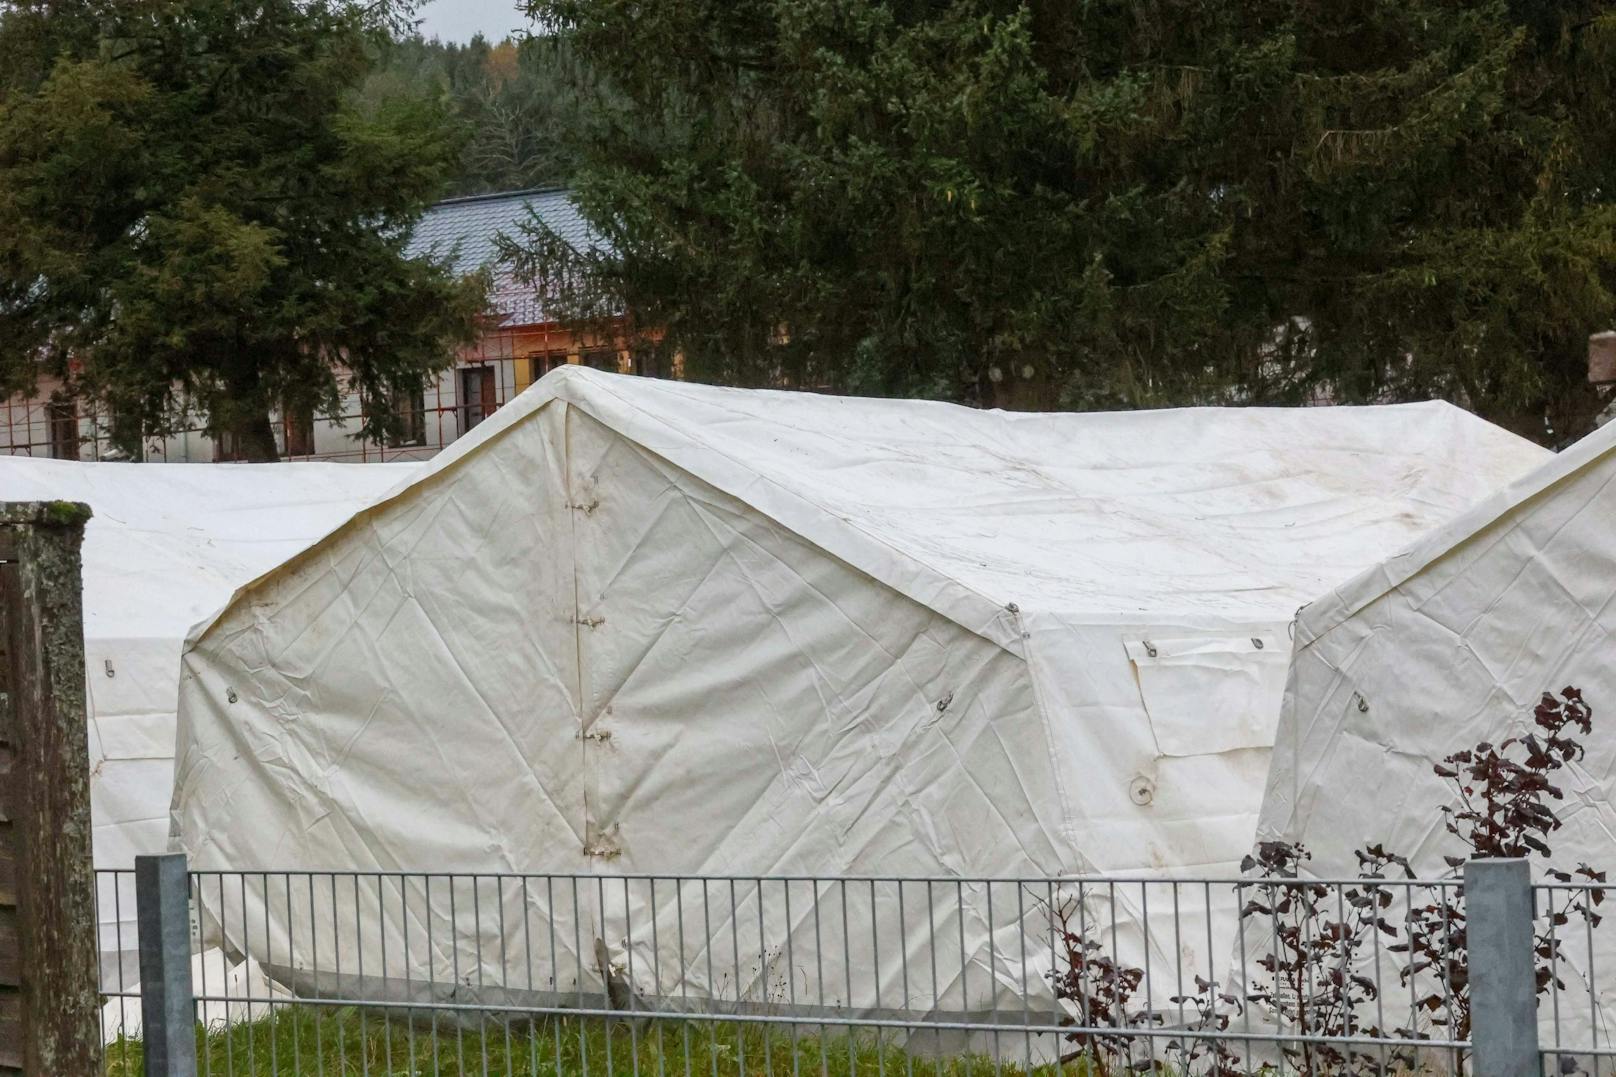 Expertin sieht in Asyl-Zelten "Kalkül" der Regierung